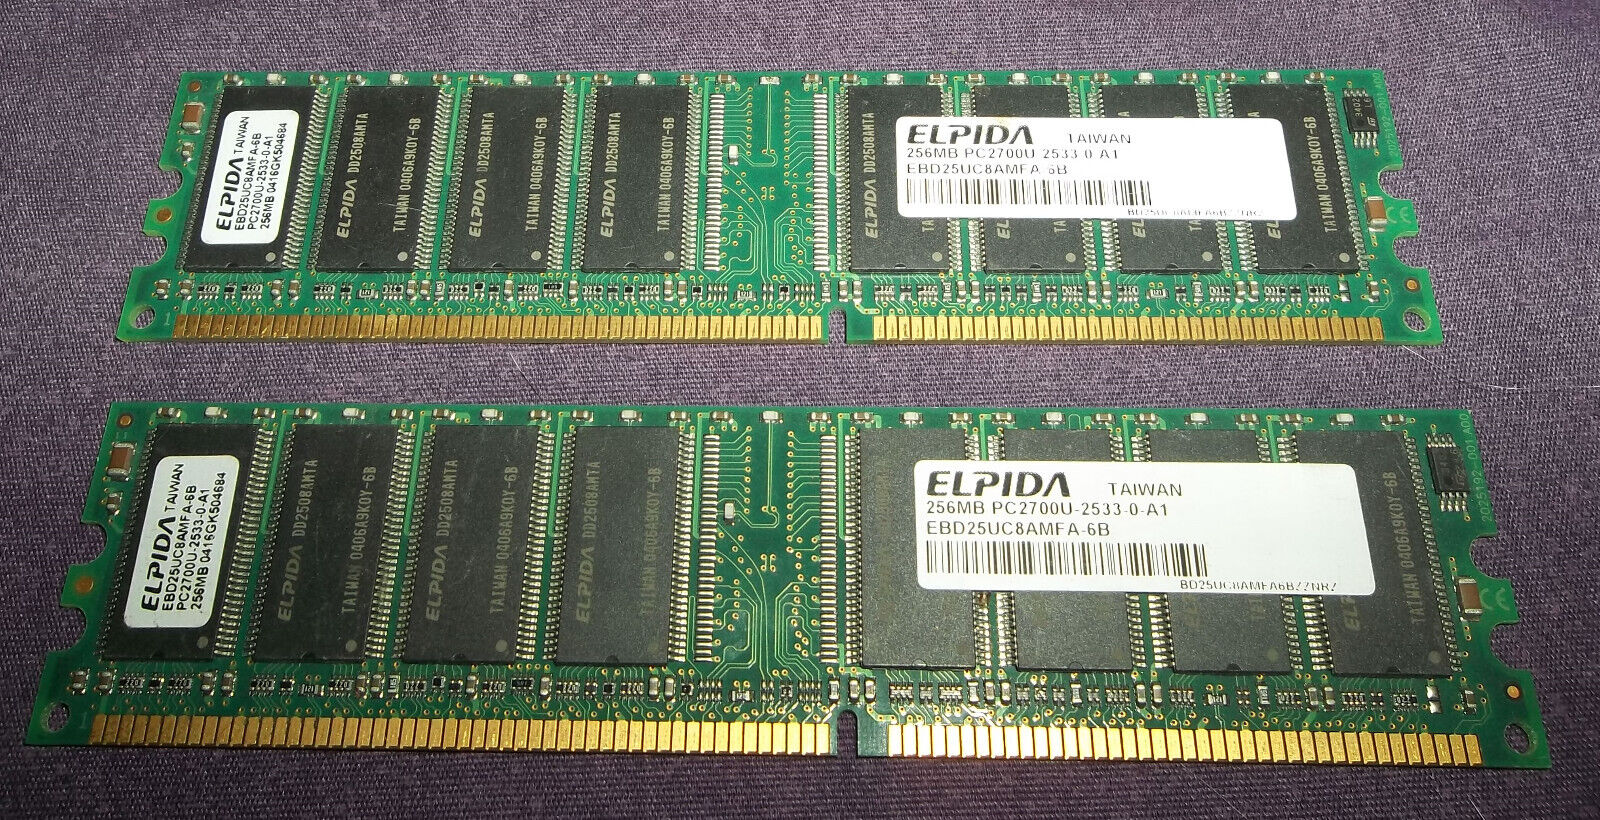 ELPIDA MEMORY 256MB DDR 333 CL3 PC2700 - 2 STICKS DESKTOP RAM - TESTED WORKING